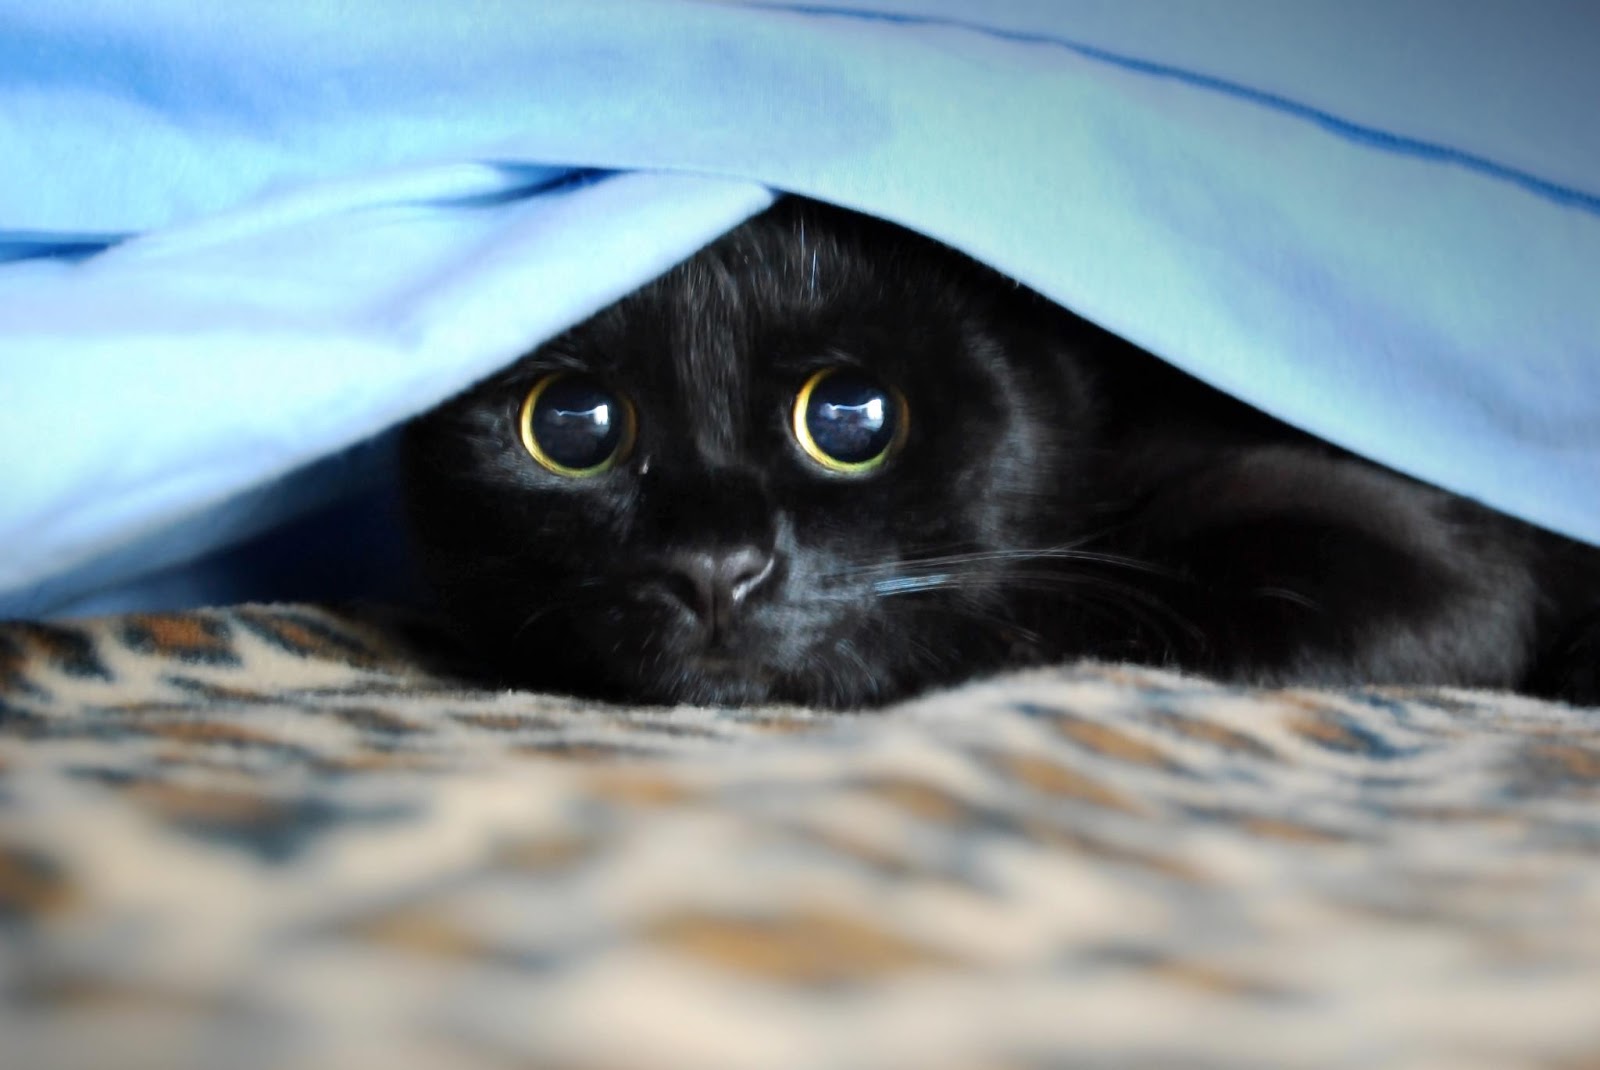 Perchè adottare un gatto nero? Dopo aver letto queste 5 motivazioni  correrete subito a prenderne uno! Leggere per credere!